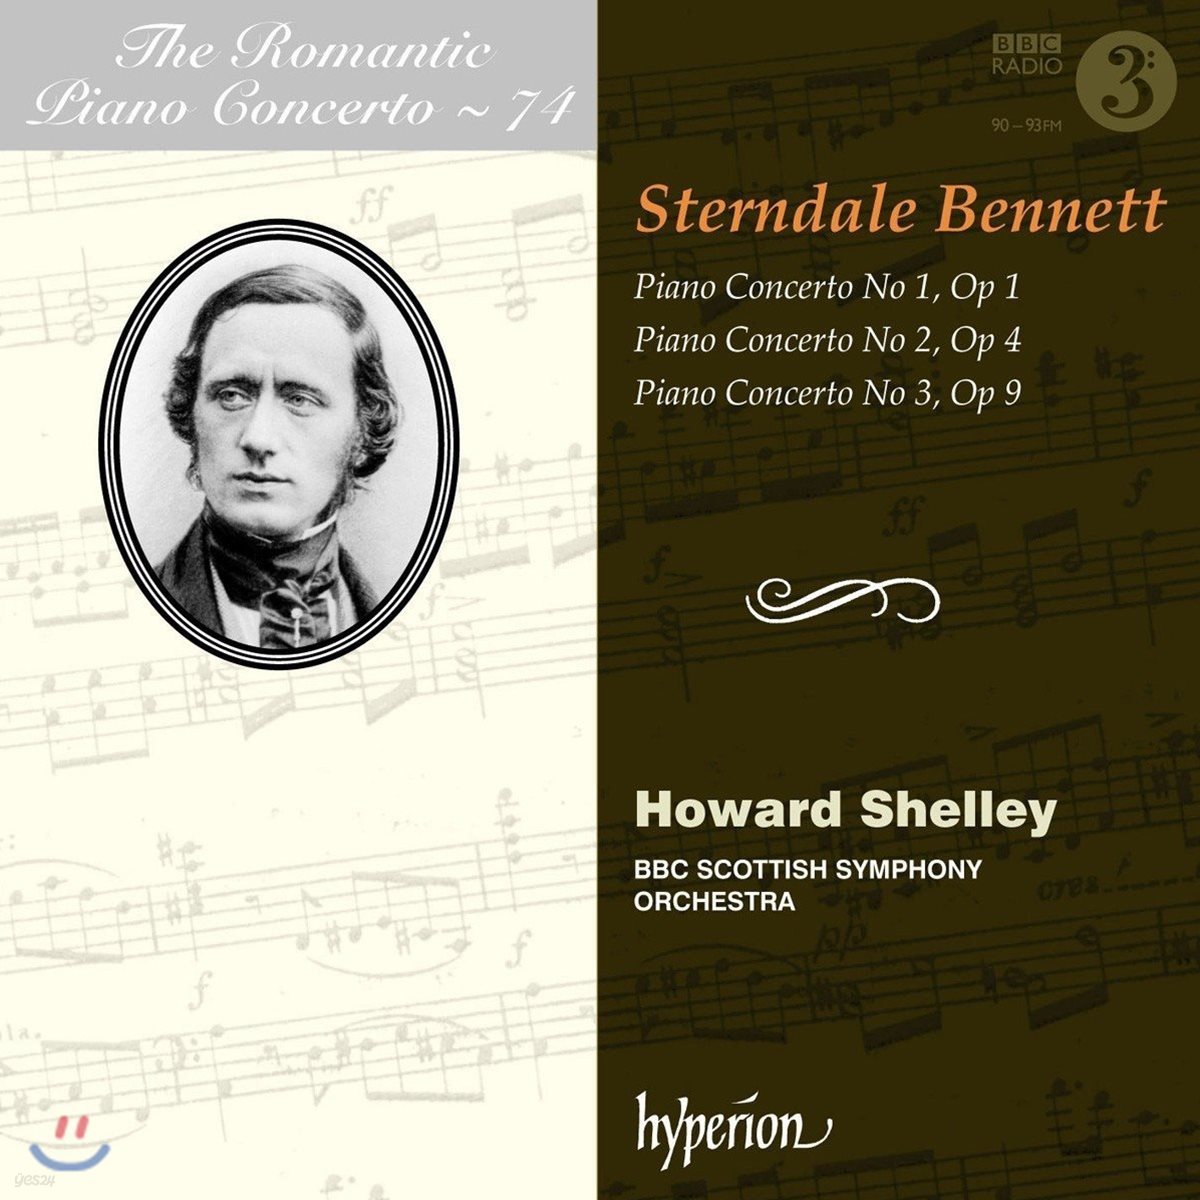 낭만주의 피아노 협주곡 74집 - 윌리엄 스턴데일 베넷트: 피아노 협주곡 1-3번 (The Romantic Piano Concerto Vol.74 - William Sterndale Bennett)